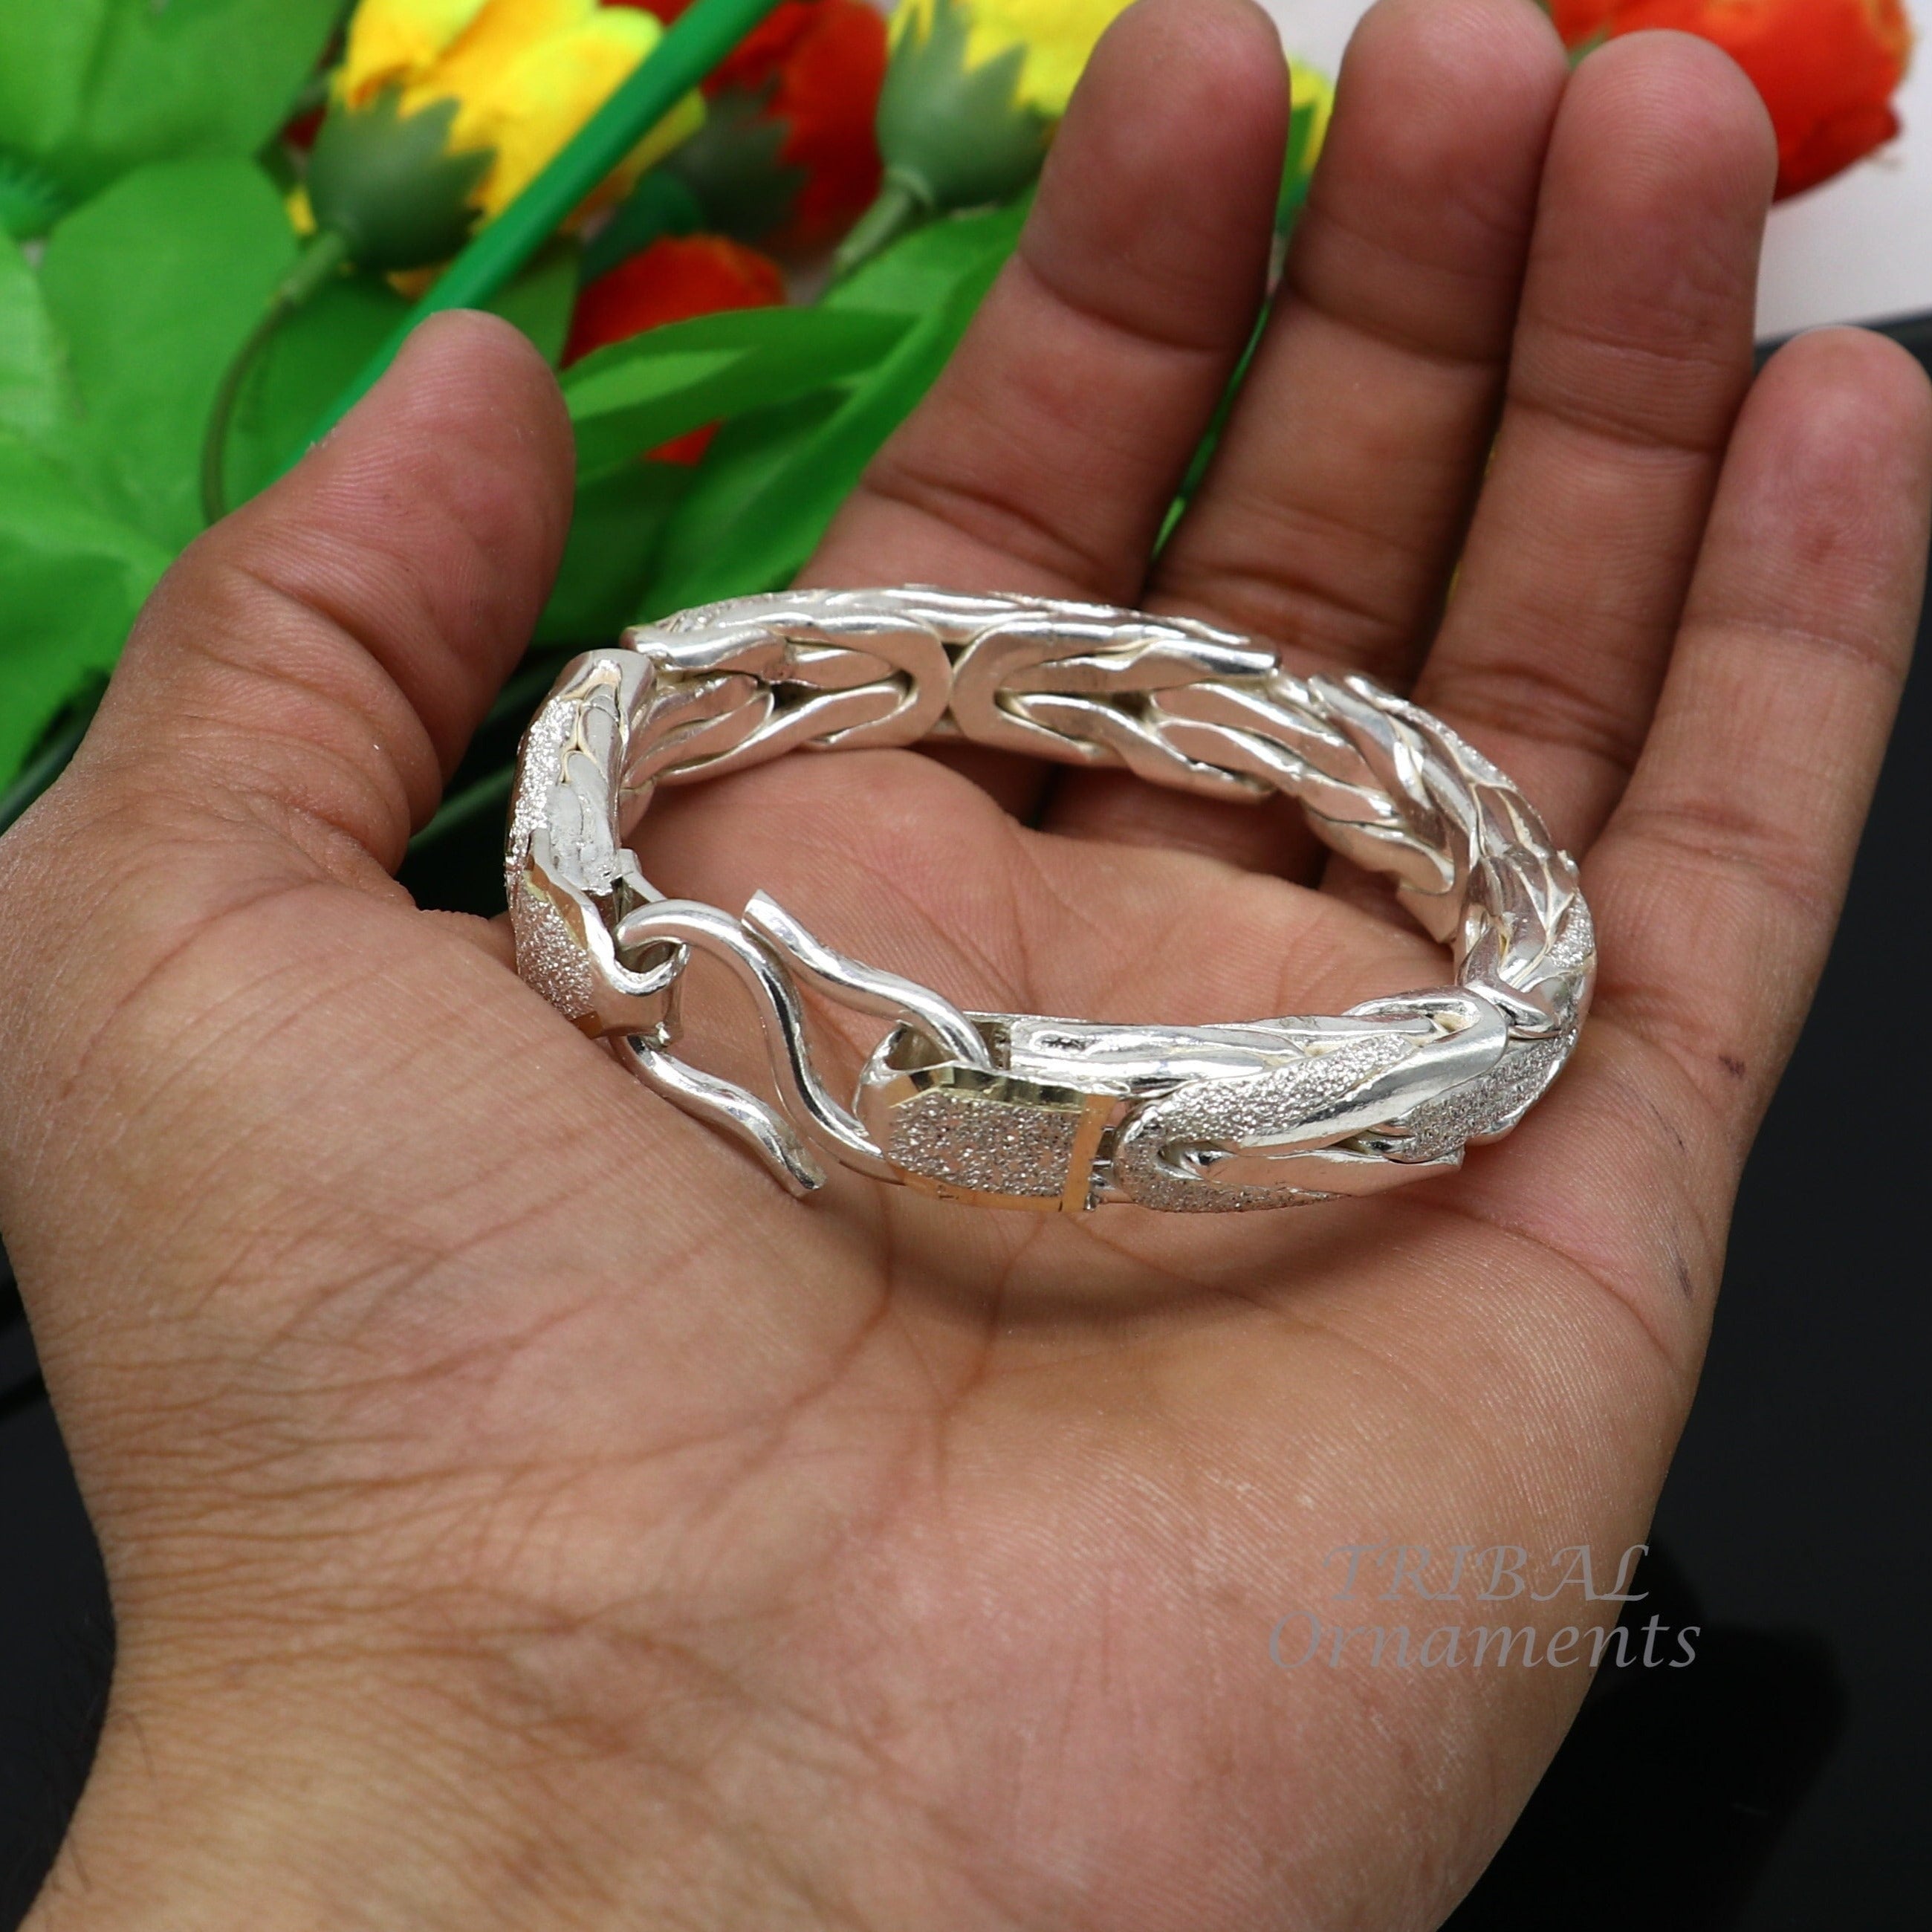 Thin 2mm Silver Bracelet, Silver Mens Bracelet Chain for Men, Cuban Link  Bracelet Chain, Minimalist Silver Bracelet Mens Jewellery Gifts - Etsy